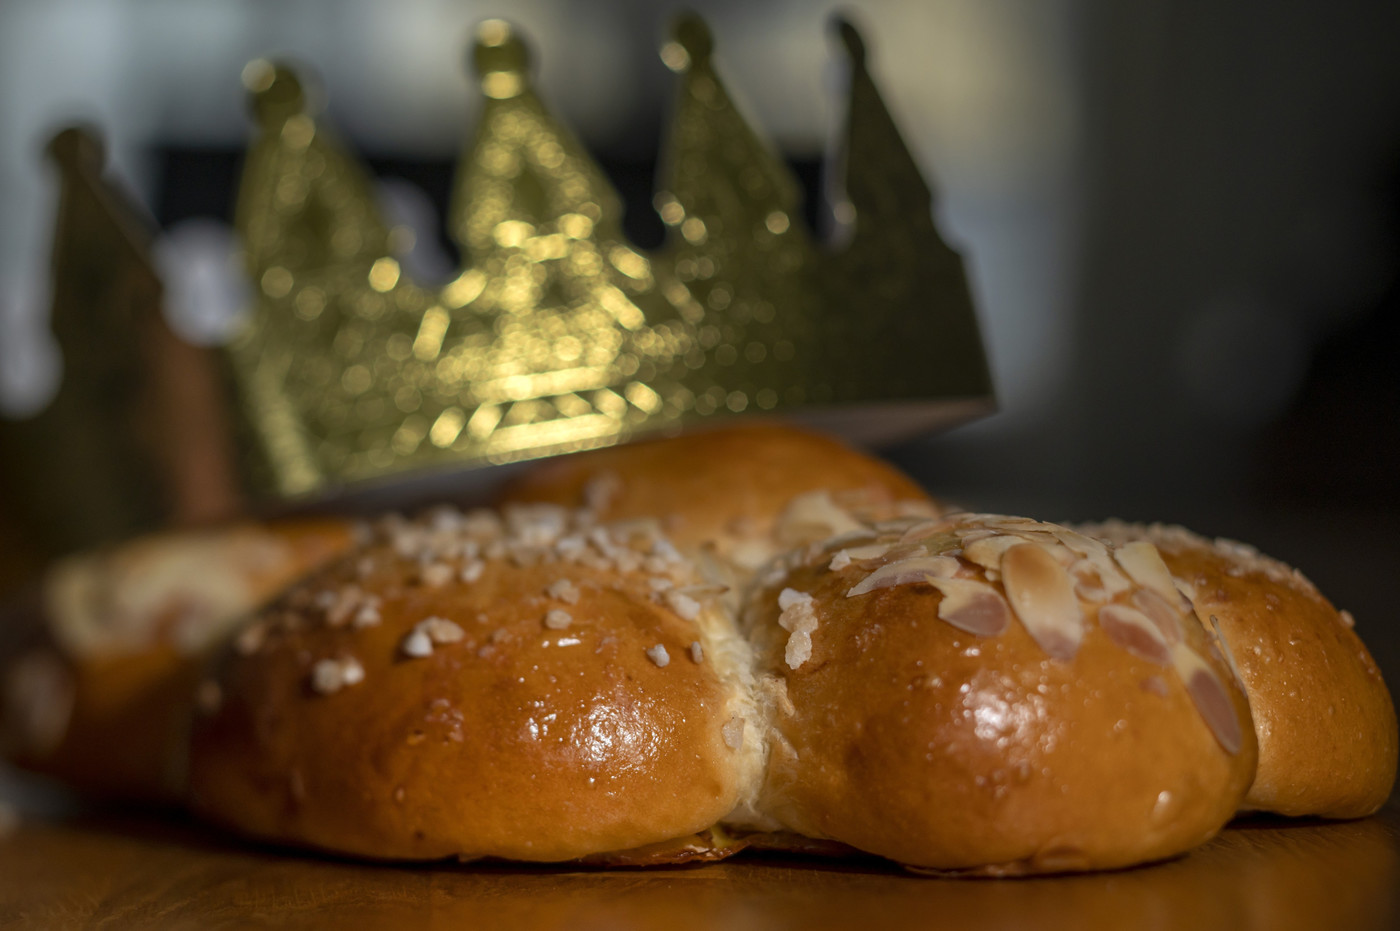 Lecker und naheliegend: Der Dreikönigstag mit dem legendären Kuchen steht bevor.